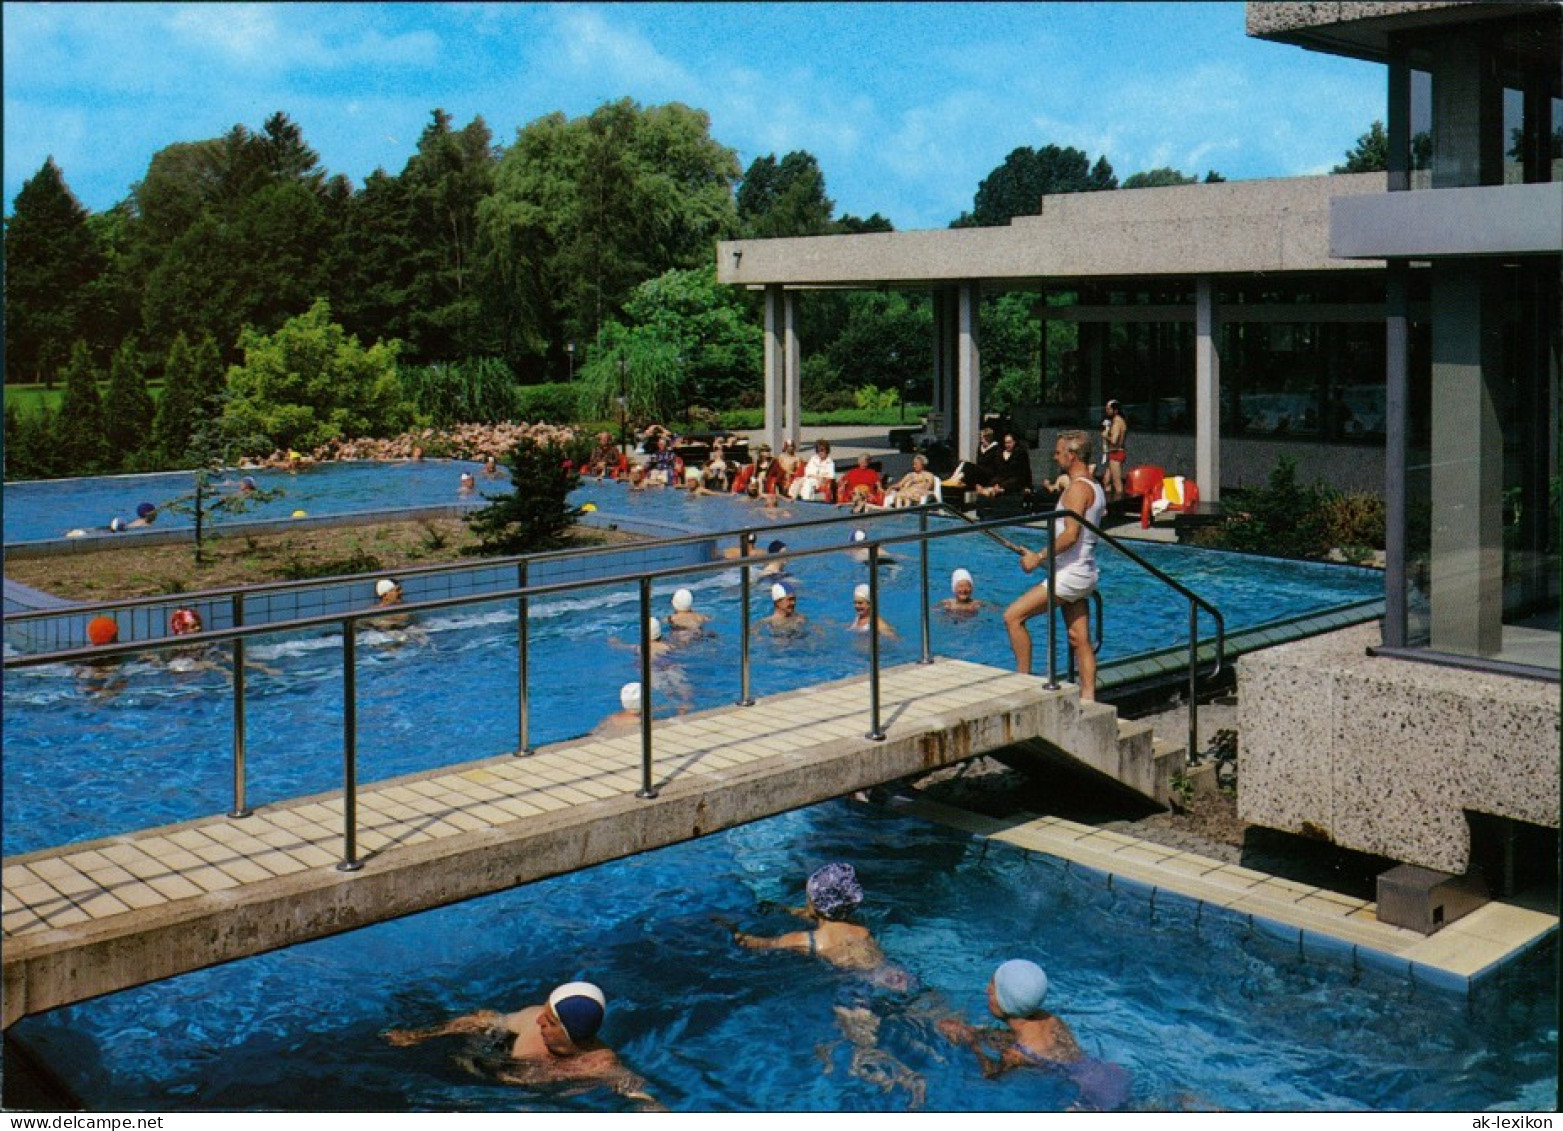 Ansichtskarte Bad Bevensen Thermal-Jod-Sole-Freibad 1995 - Bad Bevensen